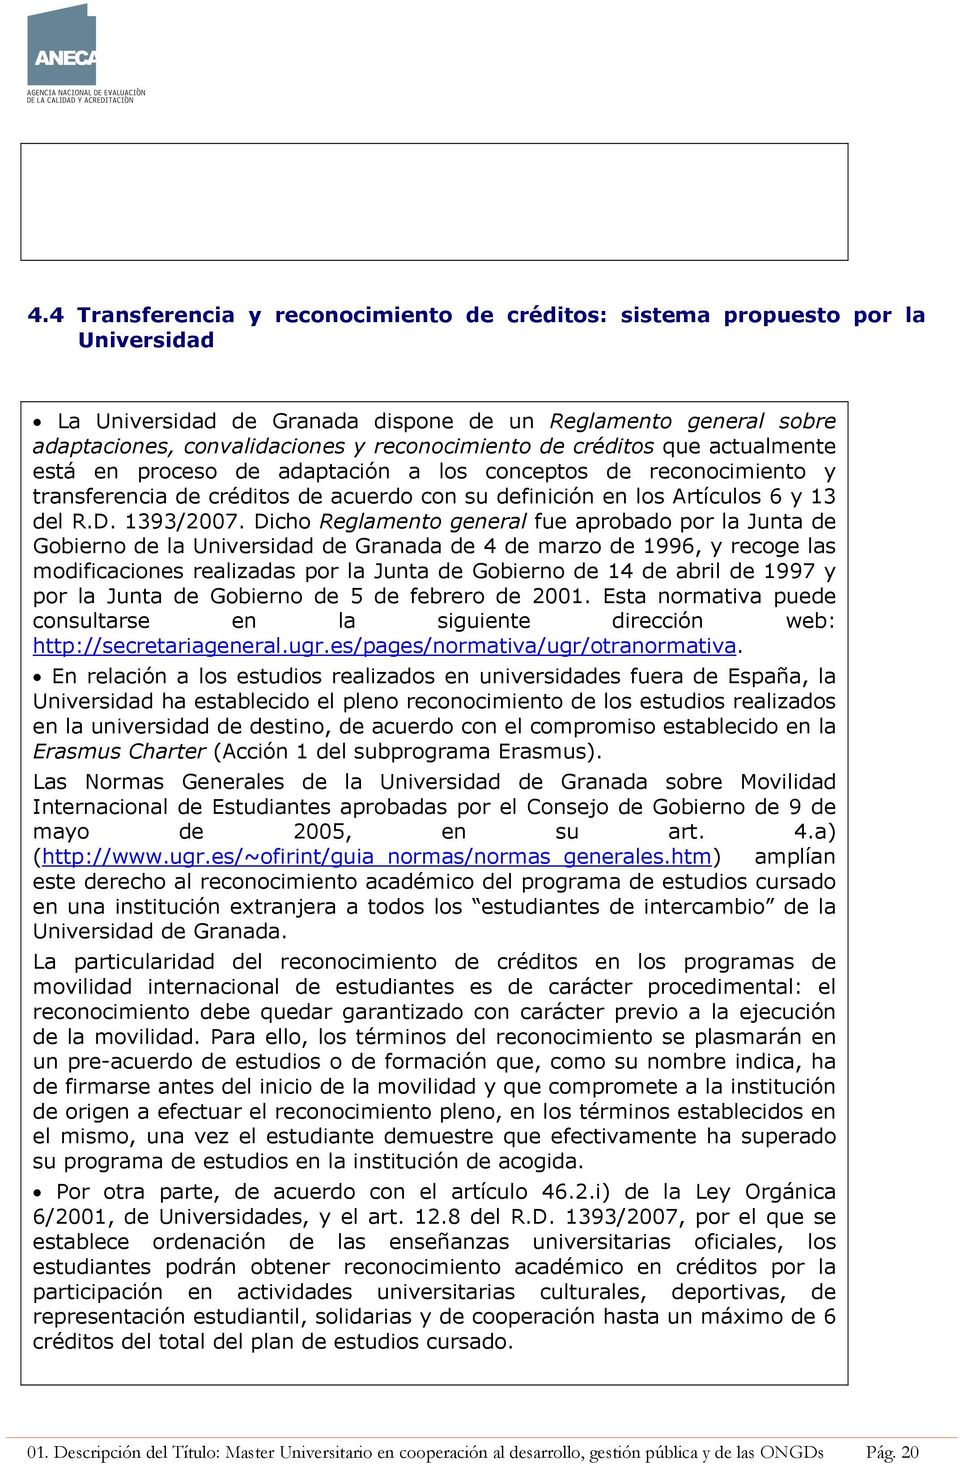 Dicho Reglamento general fue aprobado por la Junta de Gobierno de la Universidad de Granada de 4 de marzo de 1996, y recoge las modificaciones realizadas por la Junta de Gobierno de 14 de abril de